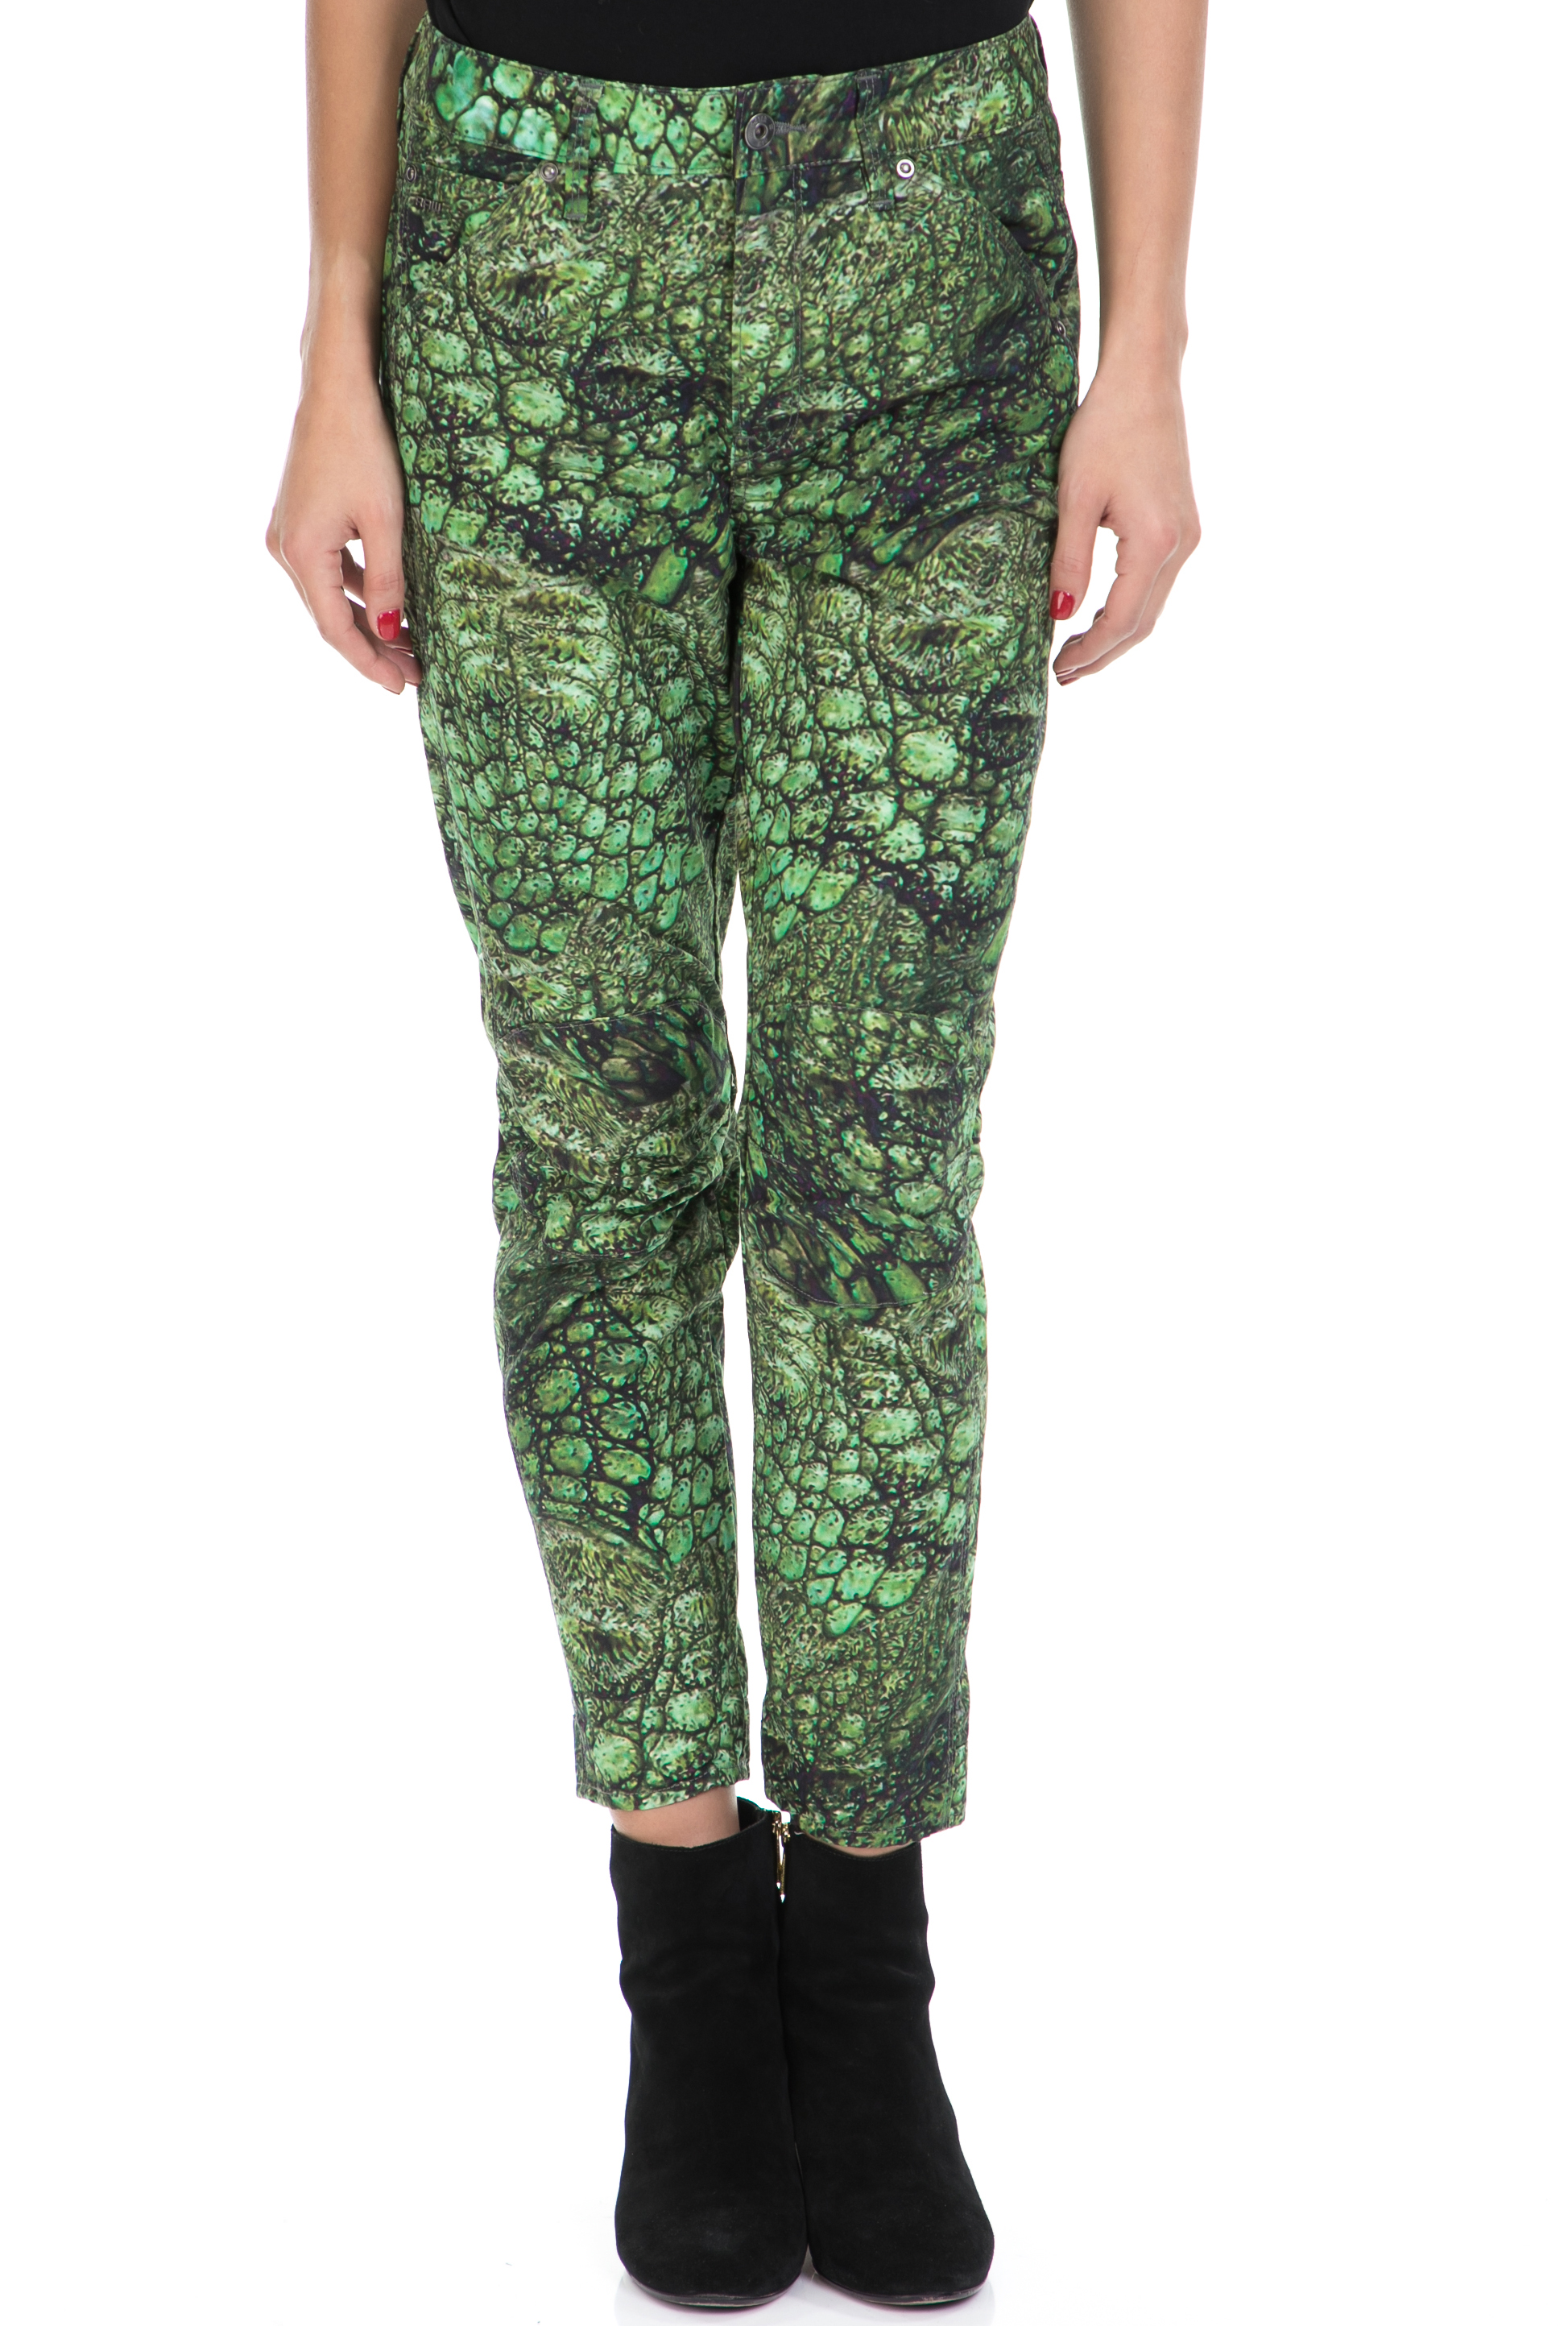 G-STAR - Γυναικείο παντελόνι 3D MID BOYFRIEND COJ G-STAR πράσινο-μαύρο Γυναικεία/Ρούχα/Παντελόνια/Ισια Γραμμή